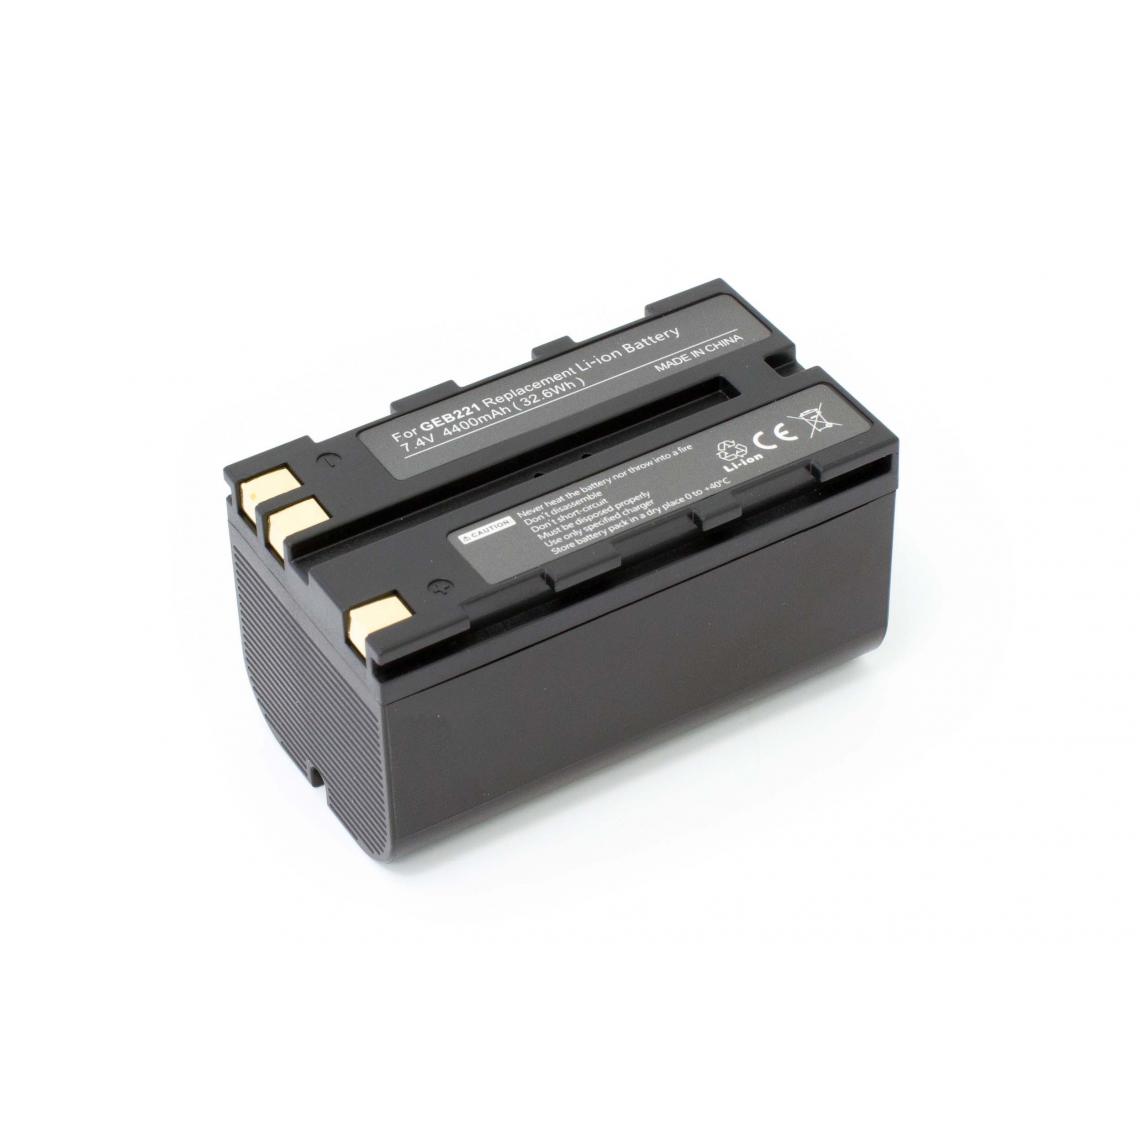 Vhbw - vhbw Batterie compatible avec Leica TS06, TS09, TS11, TS12, TS15 dispositif de mesure laser, outil de mesure (4400mAh, 7,4V, Li-ion) - Piles rechargeables